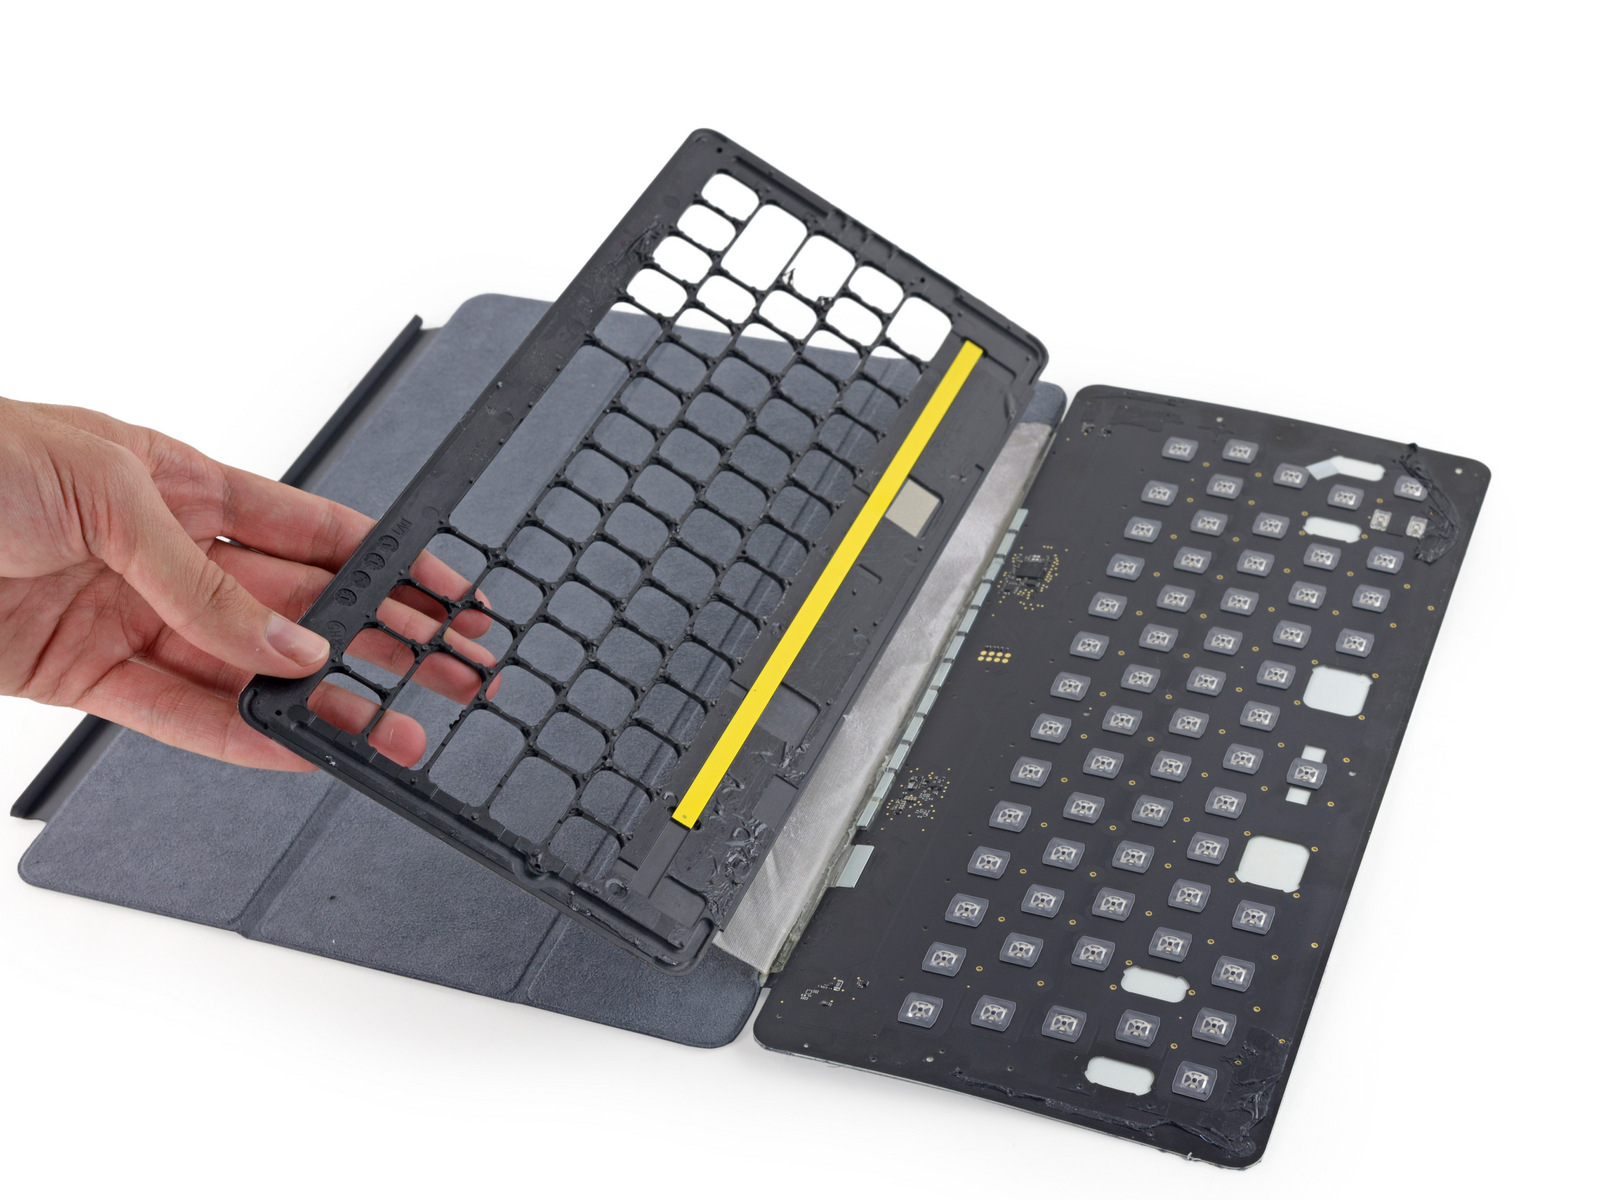 Smart Keyboard